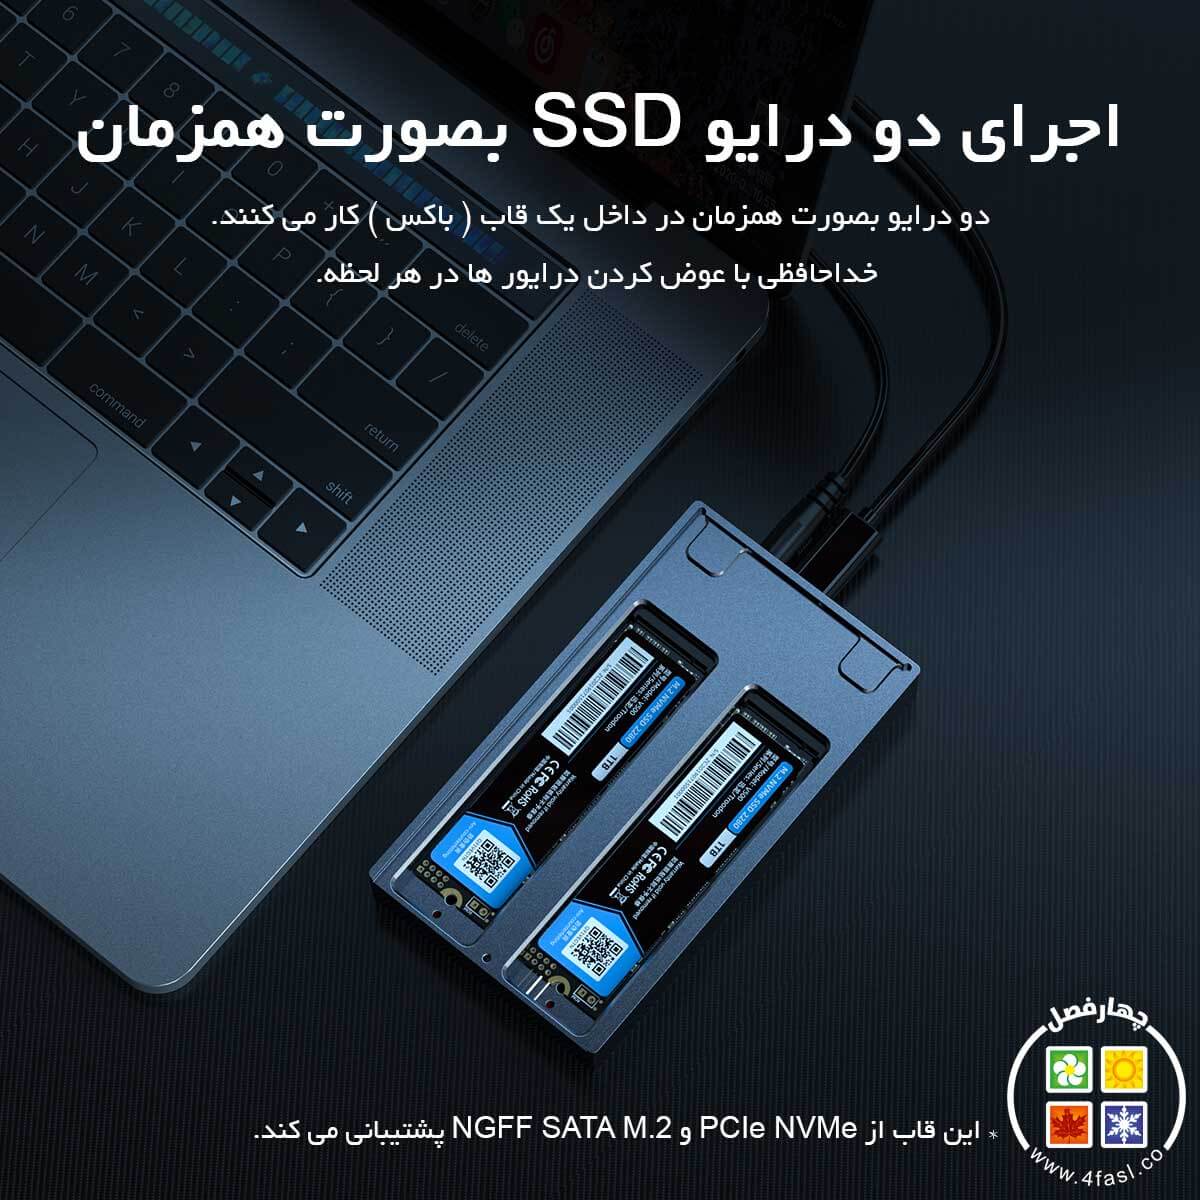 باکس SSD دو سینی ORICO M2NV01-C3